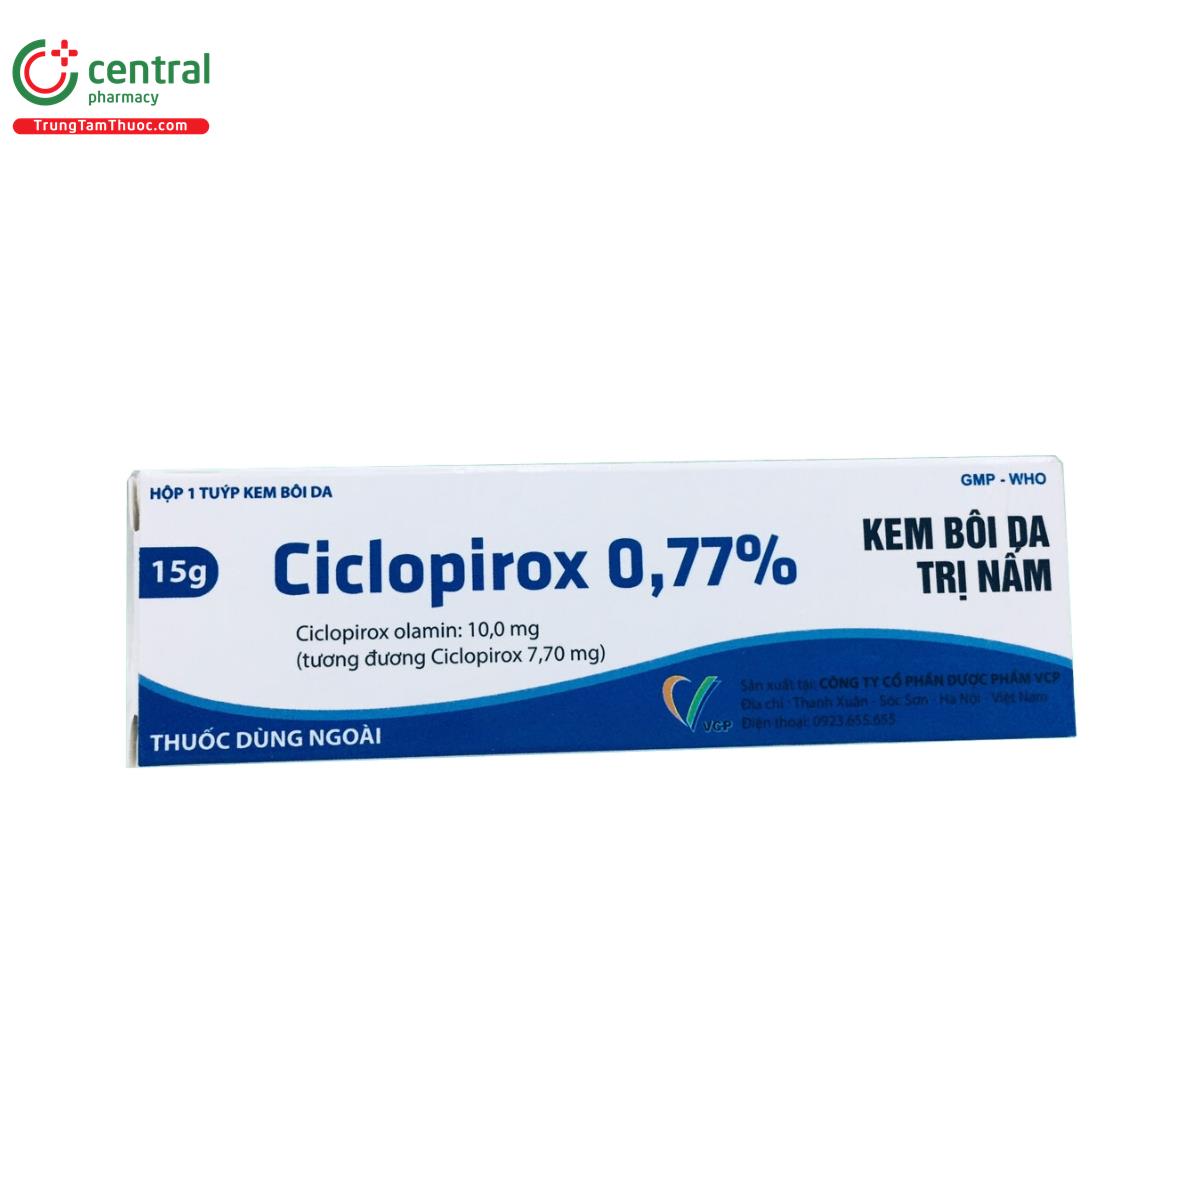 ciclopirox 077 vcp 2 I3260